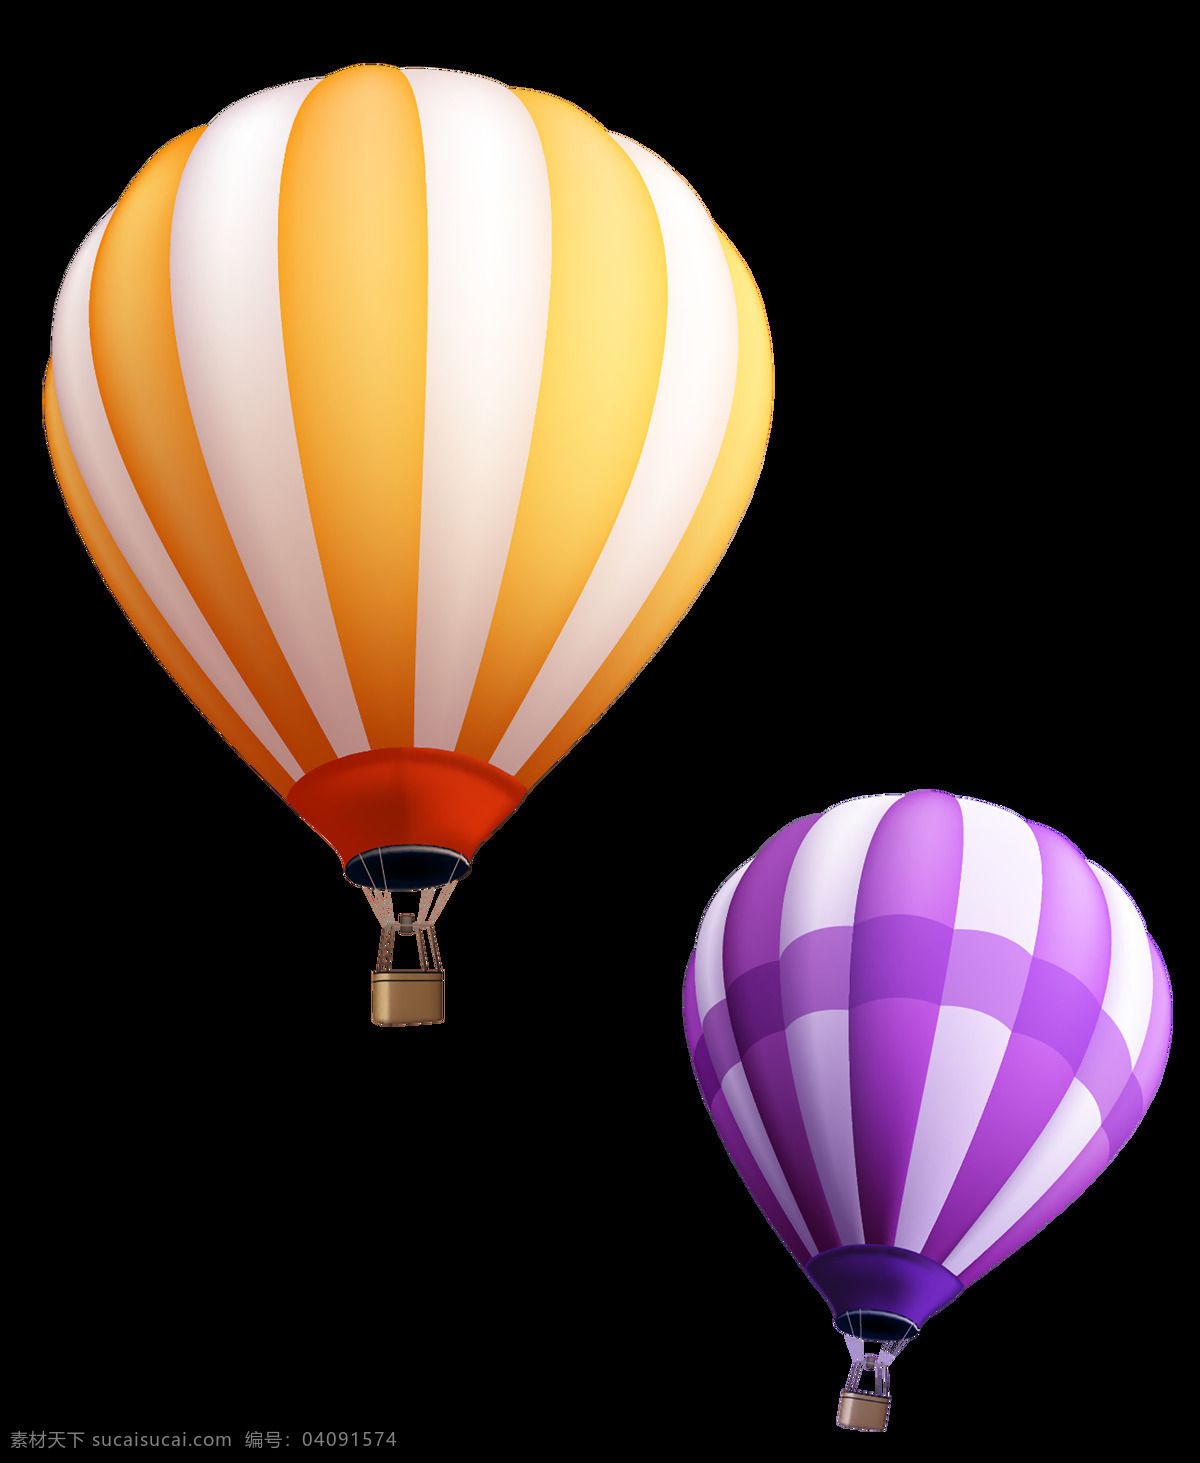 热气球图片 热气球 情迷气球 红色气球 氢气球 气球 七彩 多彩 白色气球 氢气球素材 五彩 球 渐变气球 天空气球 紫色气球 绿色气球球 蓝色气球 彩色气球 扁平气球 气球海报 气球背景 旅行 旅游 气球展架 展架 云朵展架 色彩背景 天空背景 气球图集 平面设计